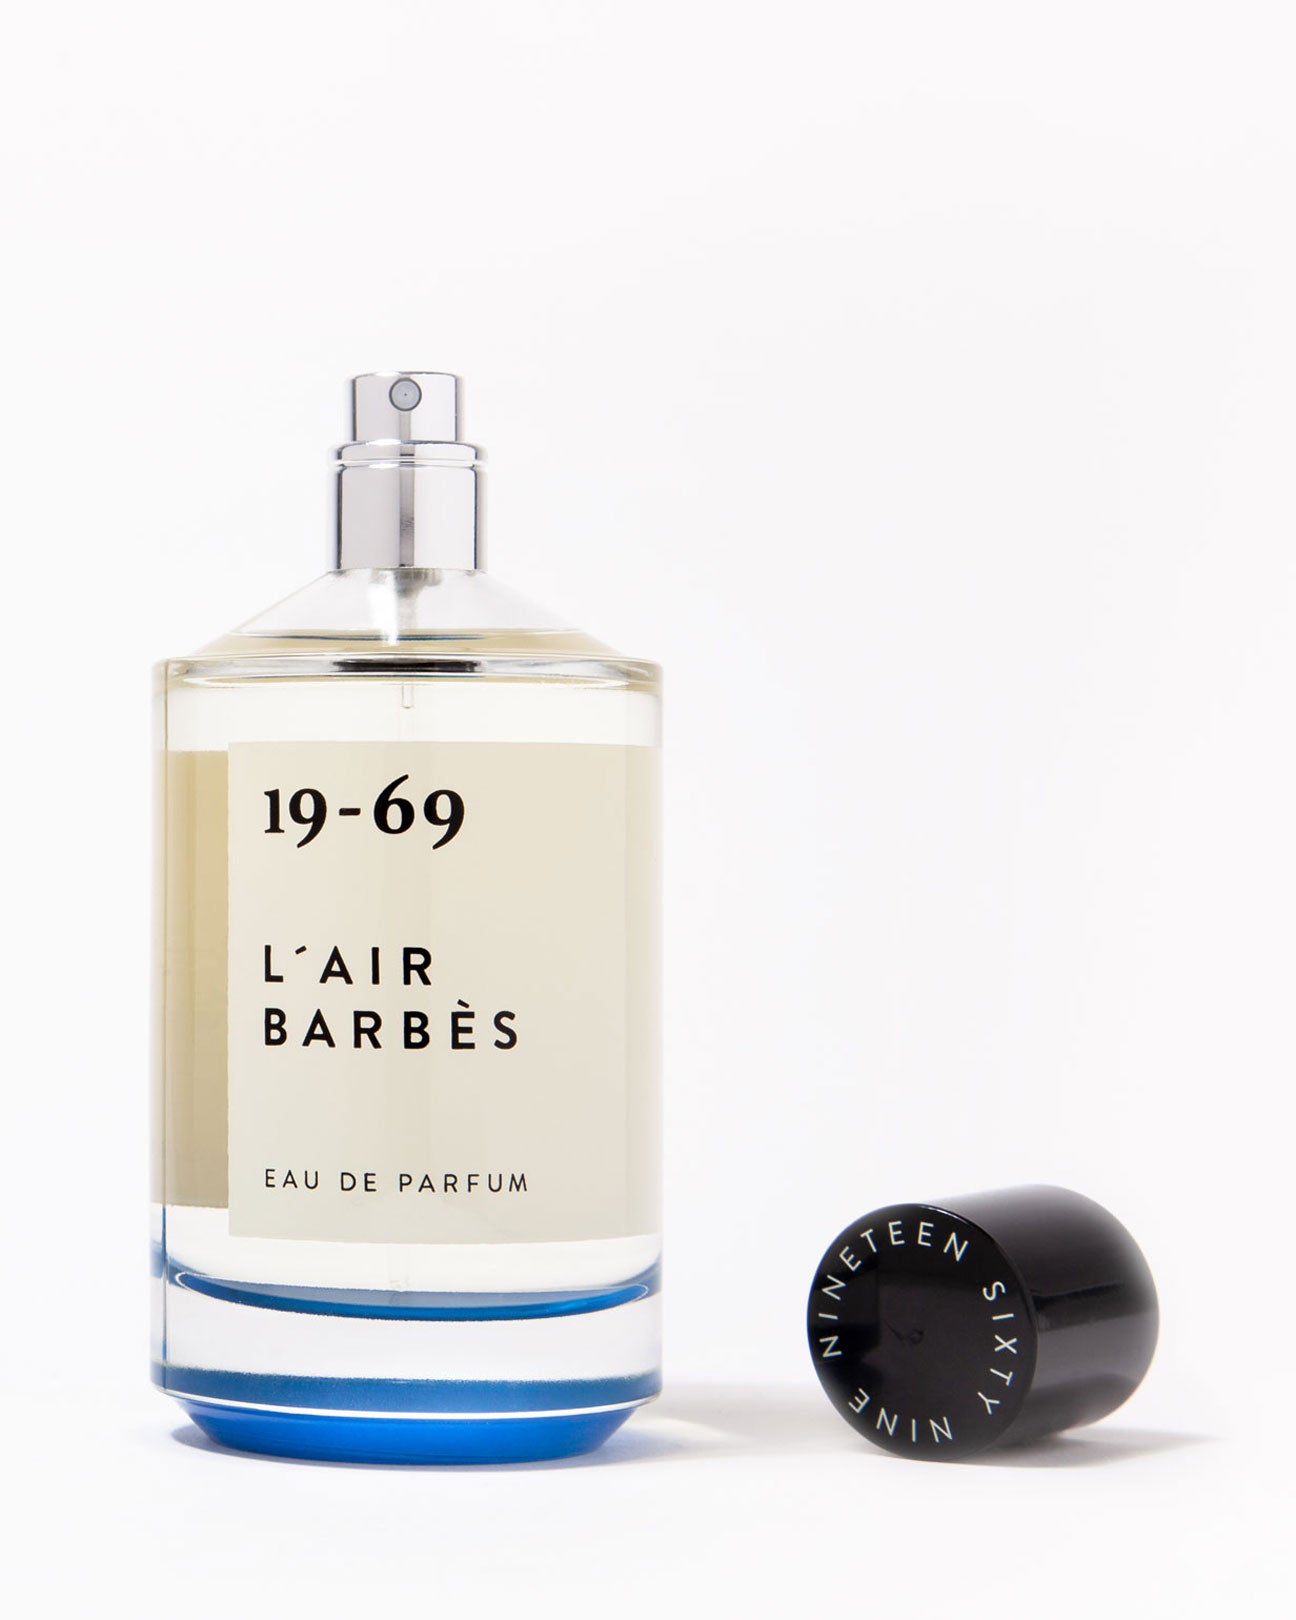 19-69 Eau De Parfum 30ml. in L'Air Barbès available at Lahn.shop